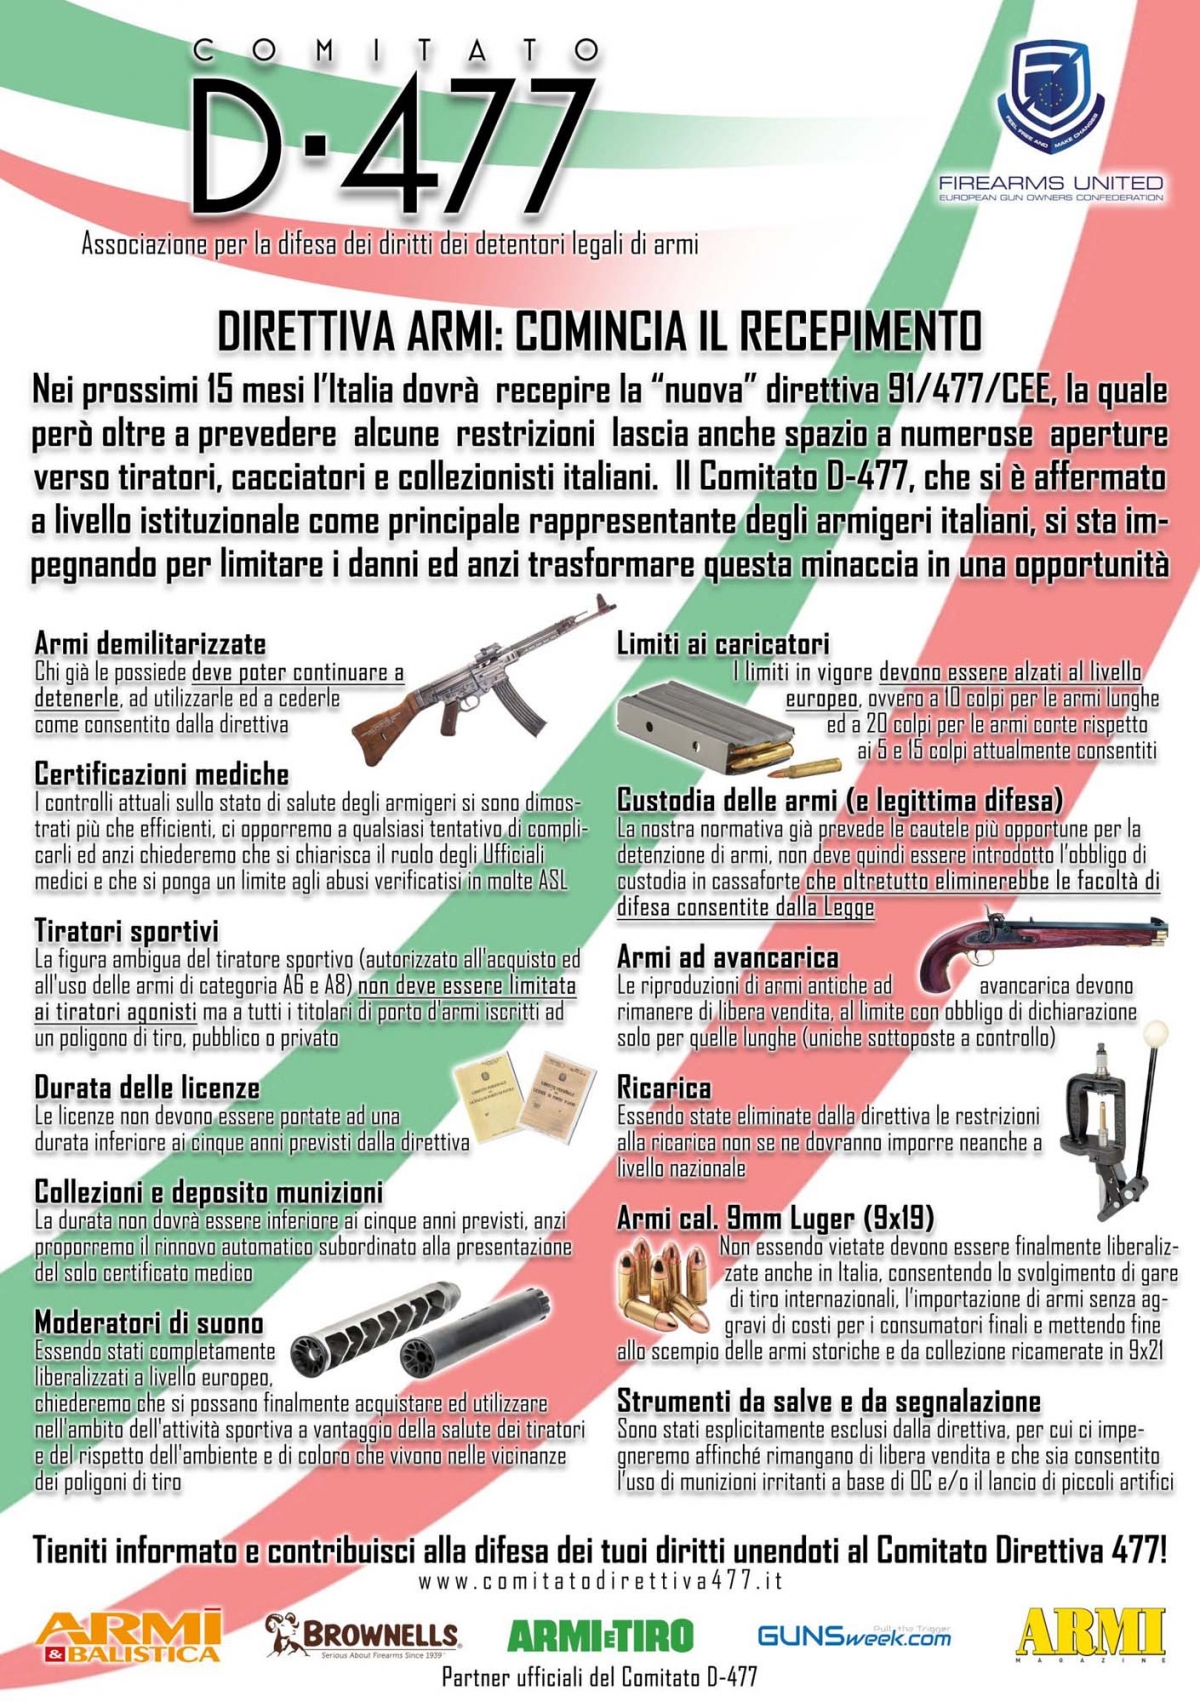 Direttiva Armi: il comparto italiano si prepara in vista del recepimento delle nuove norme